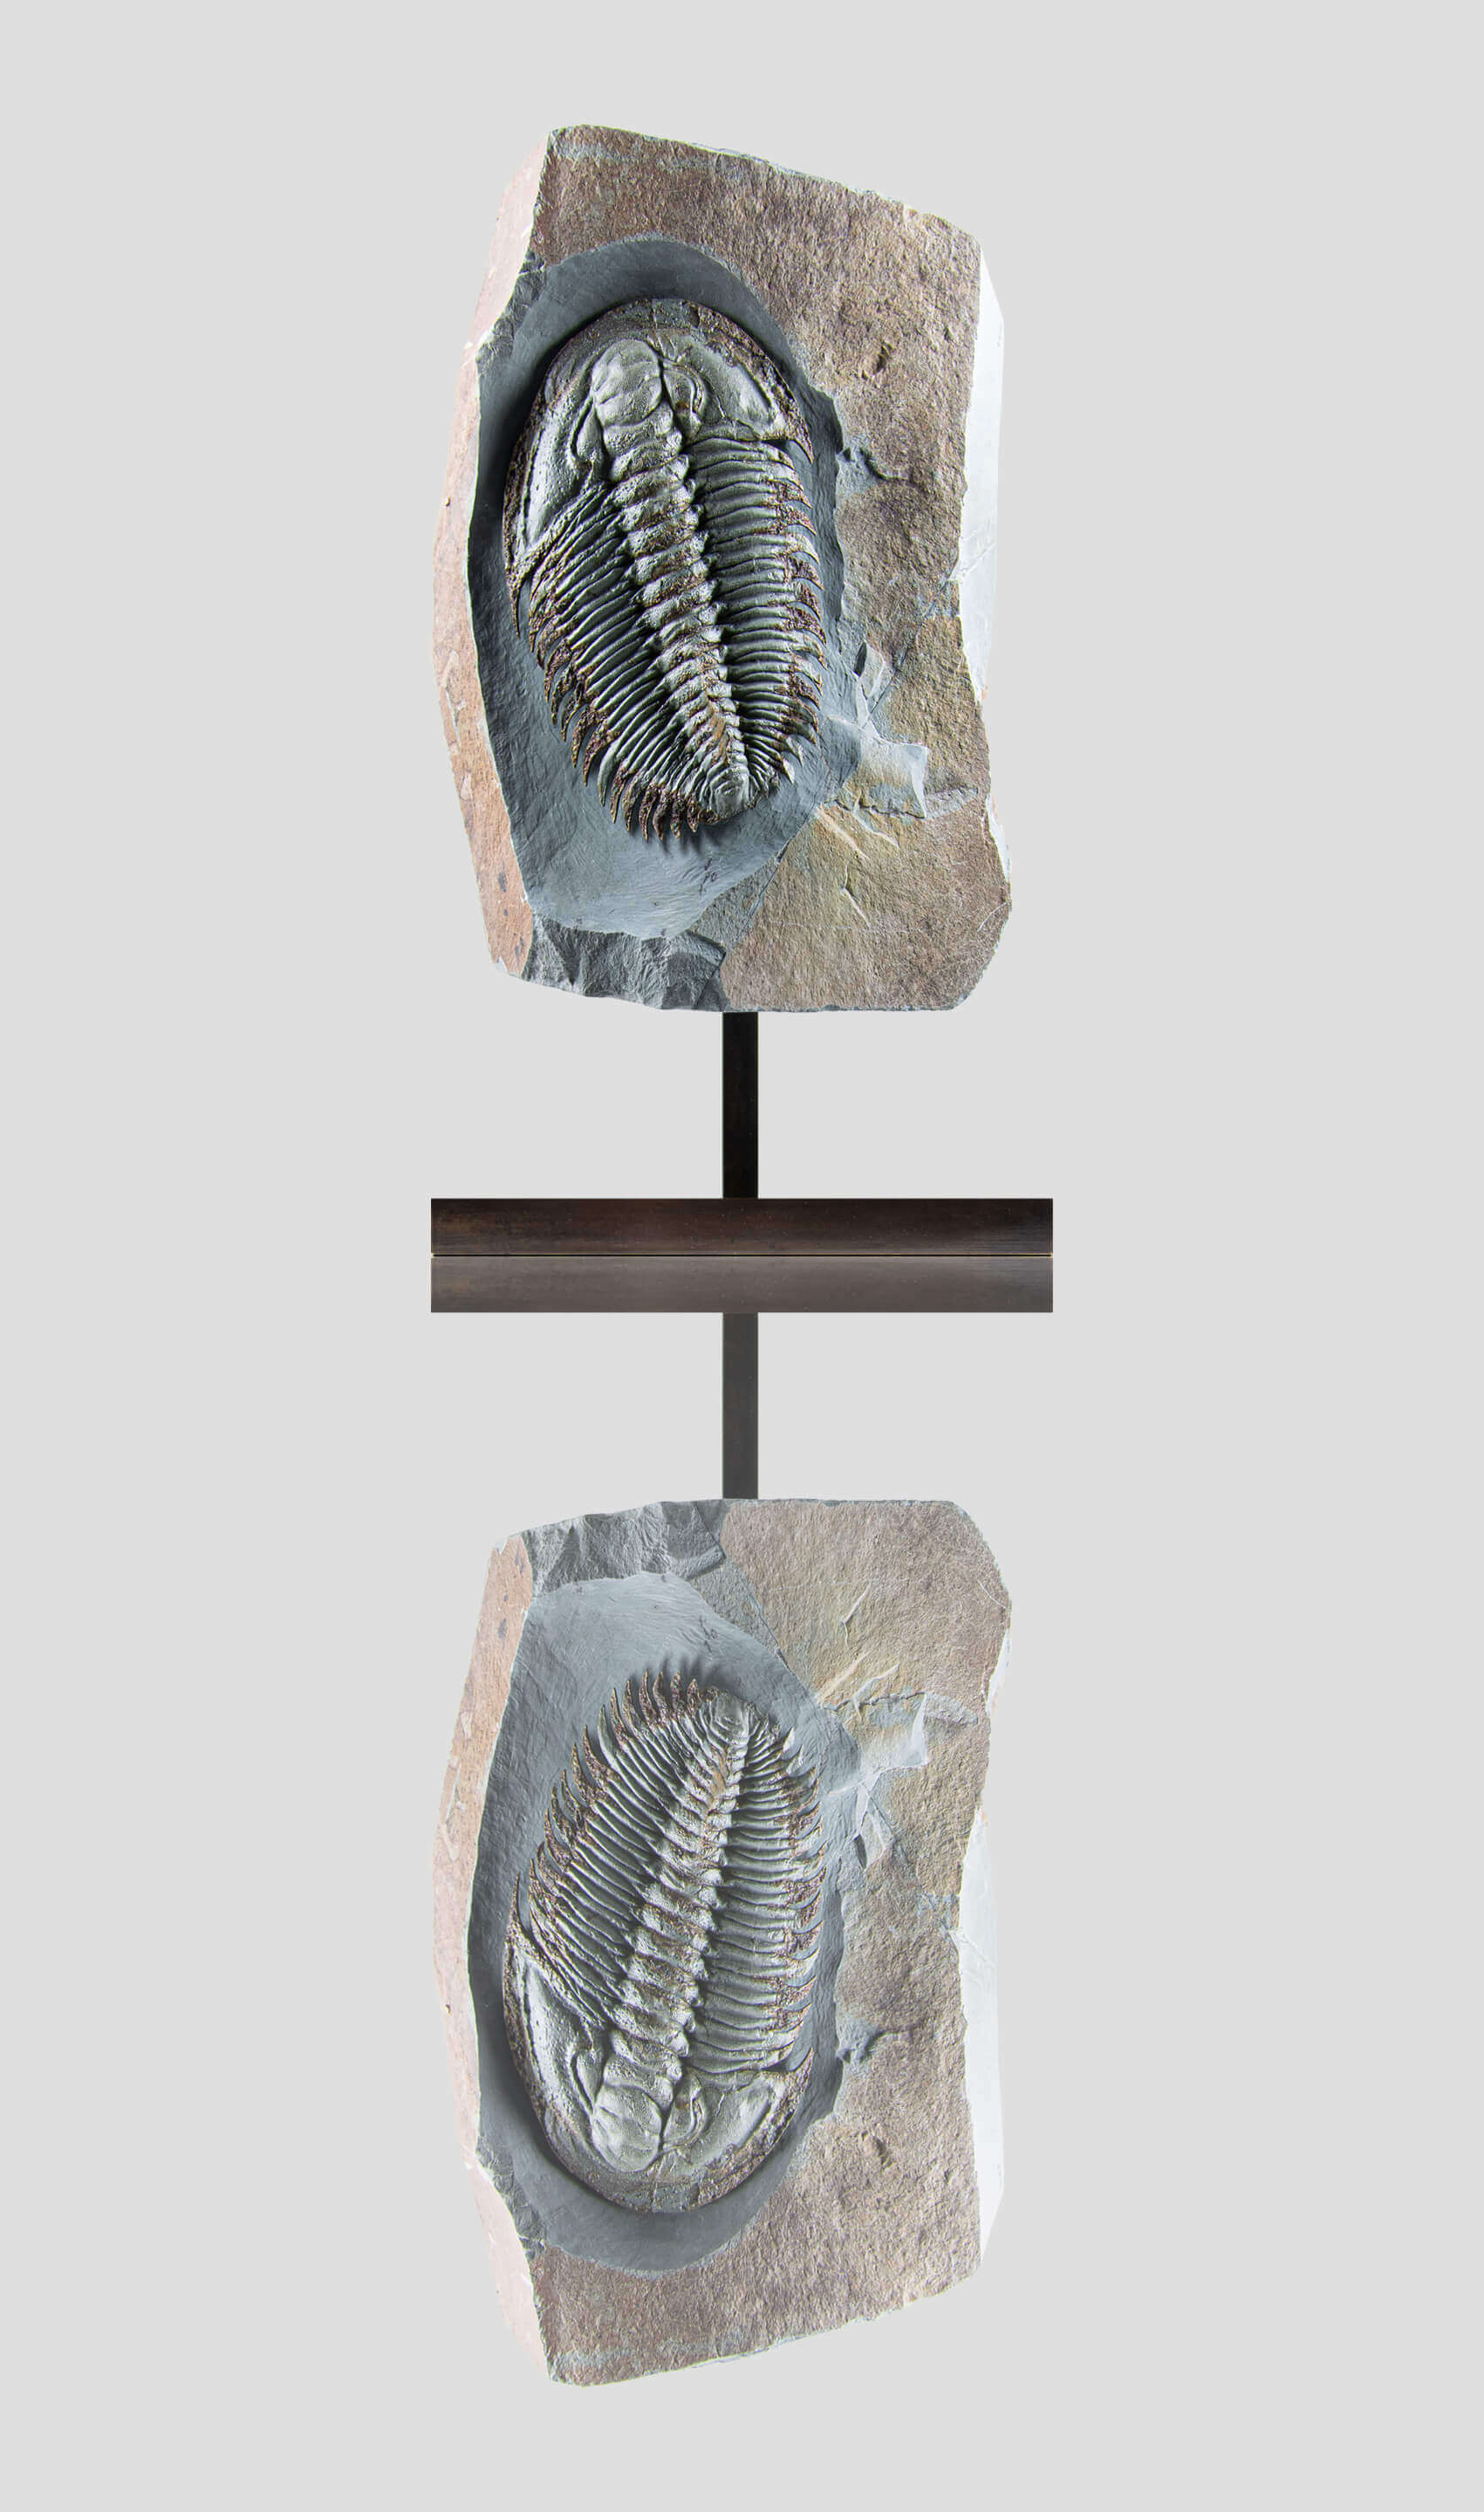 Longianda Termieri Fossil Trilobite 273mm